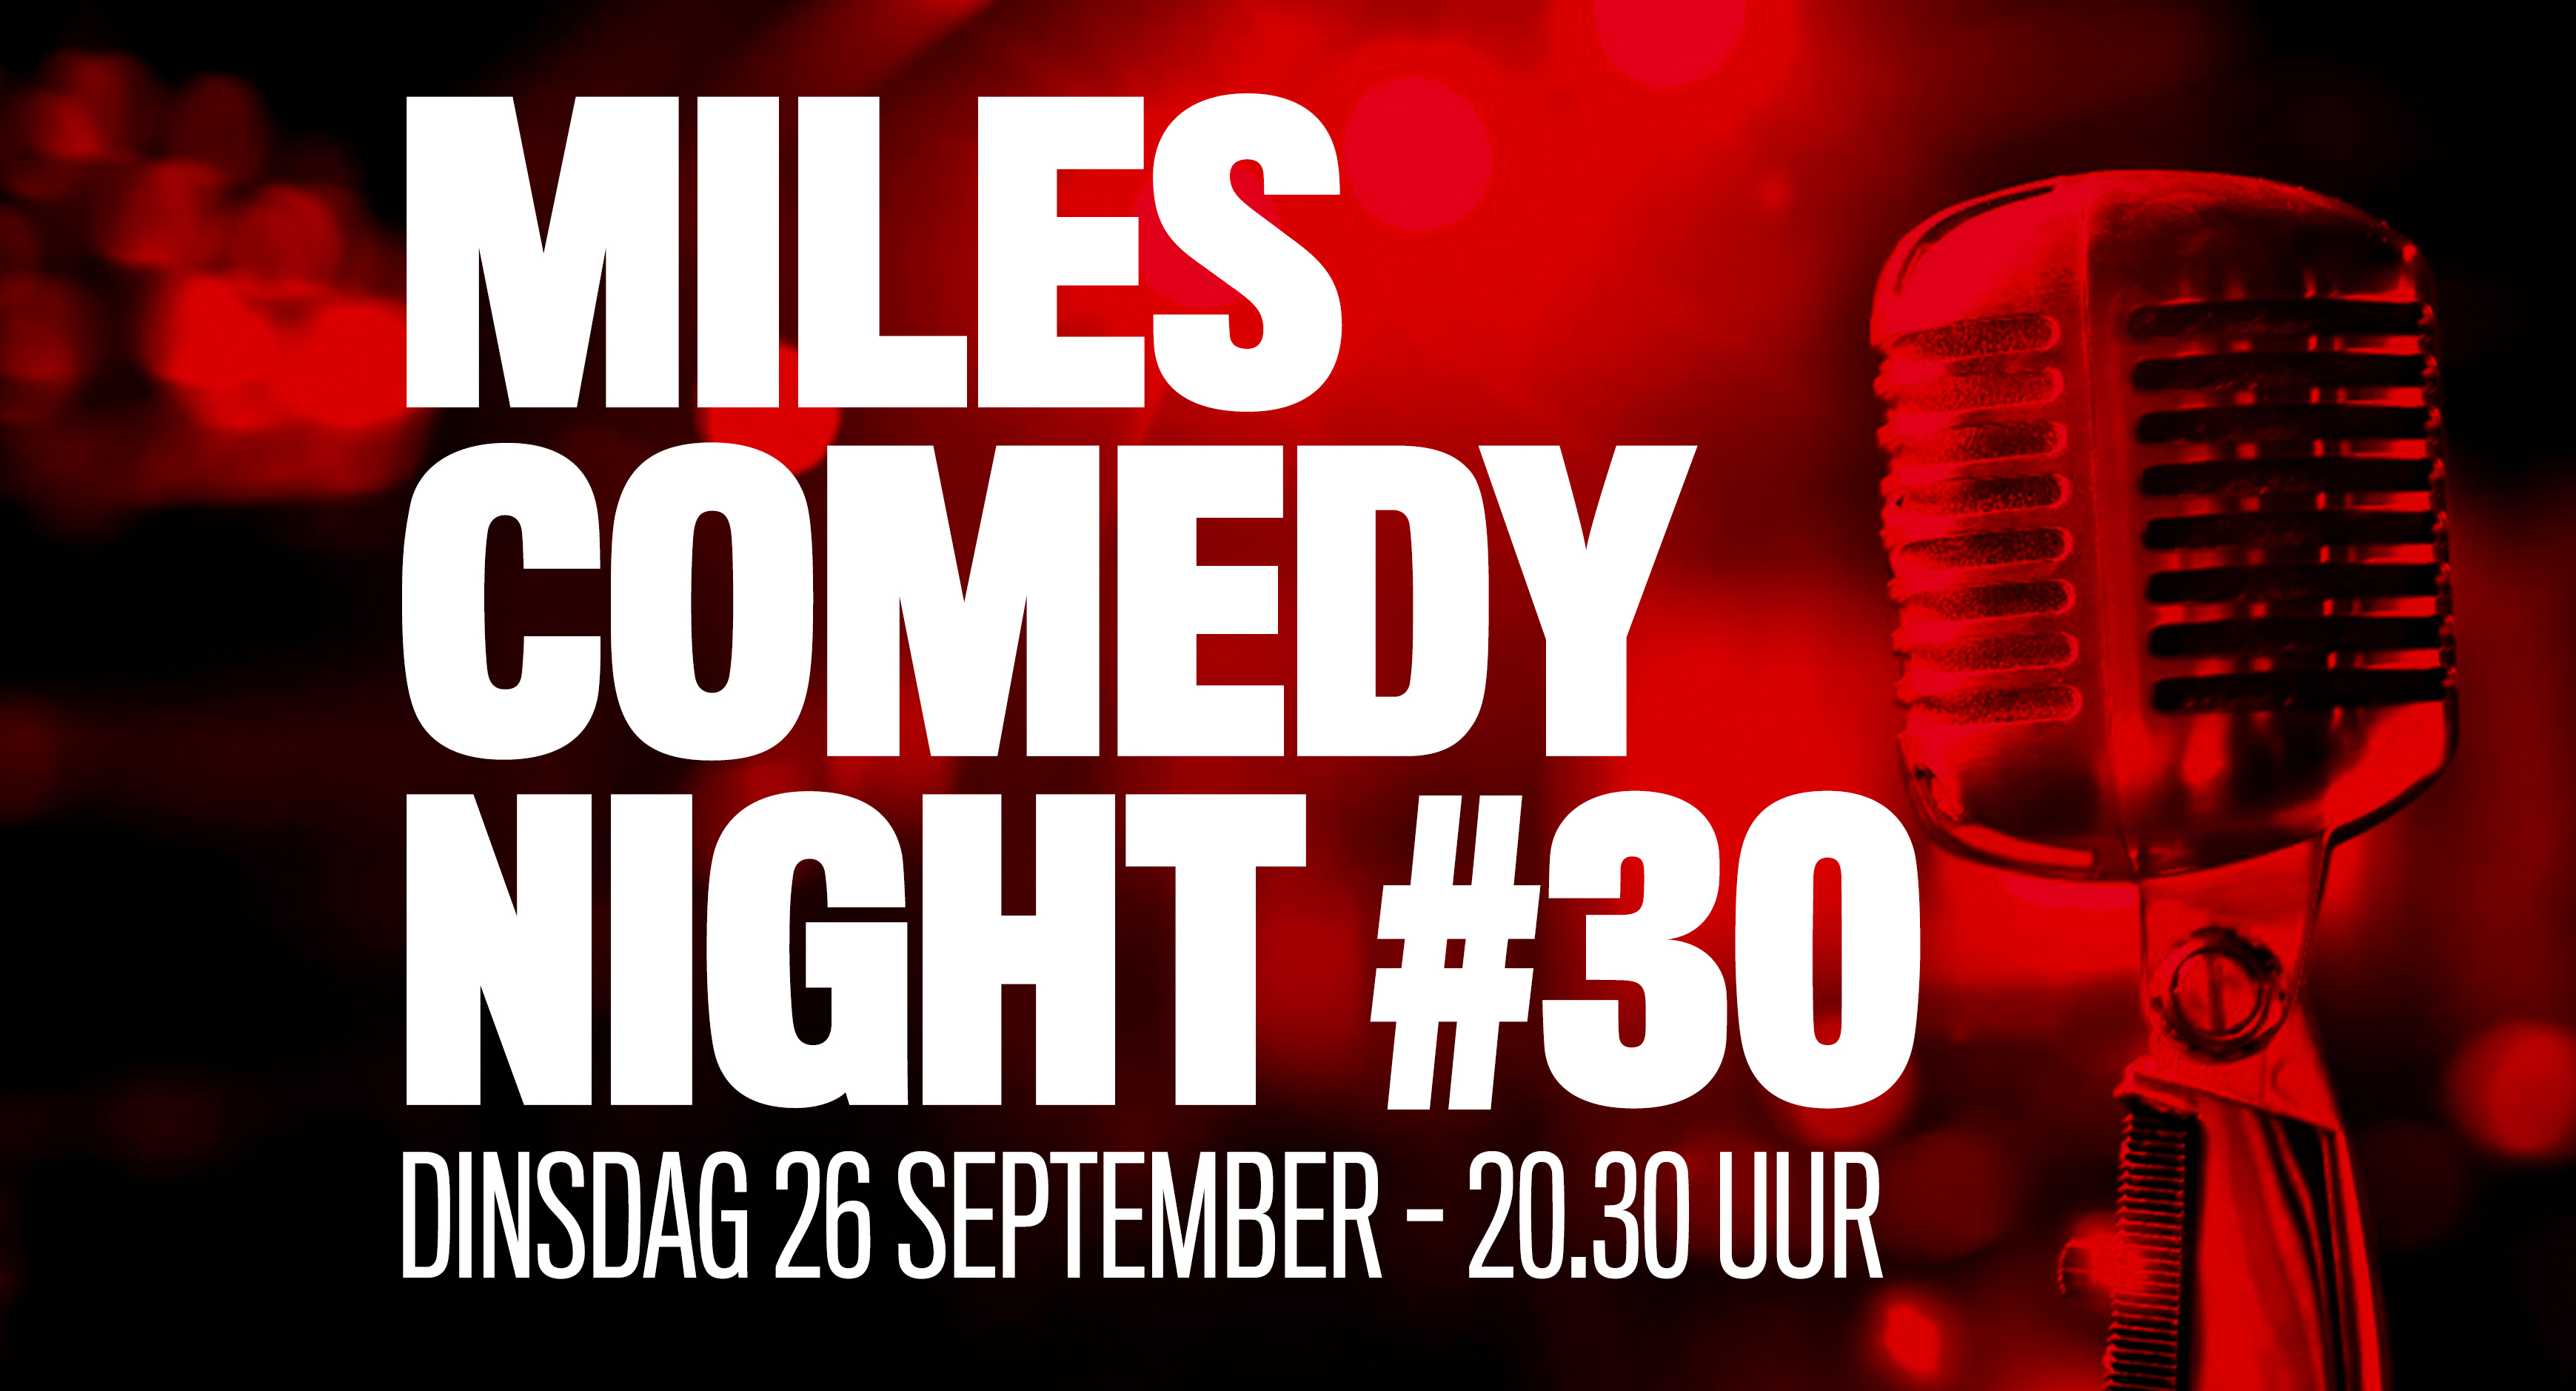 Ticket kopen voor evenement Miles Comedy Night #30